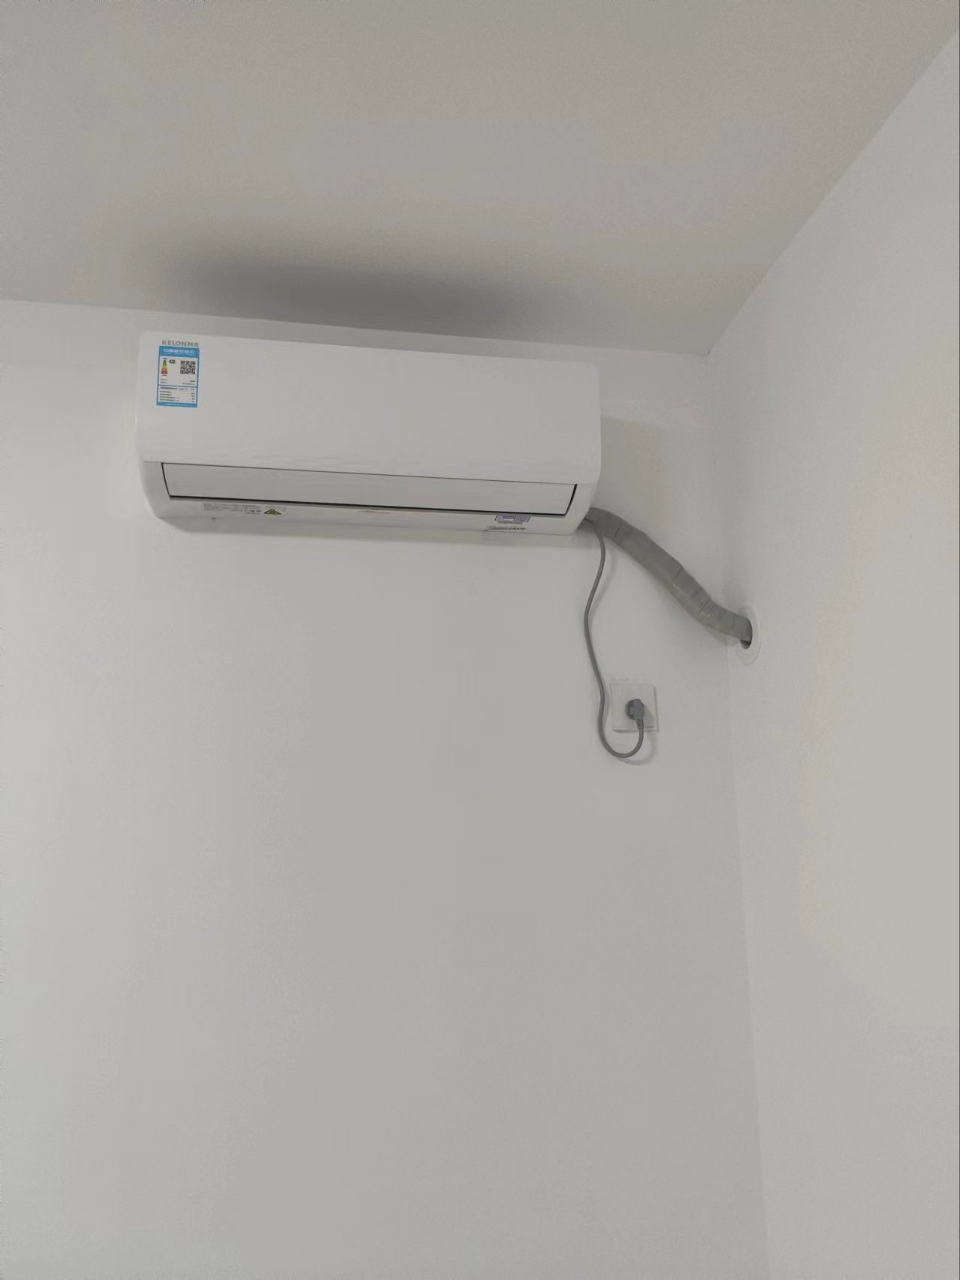 科龙(KELON)空调 大1匹新一级能效 冷暖柔风 降噪自清洁 家用卧室挂机 官方直营 KFR-26GW/QS1-X1晒单图